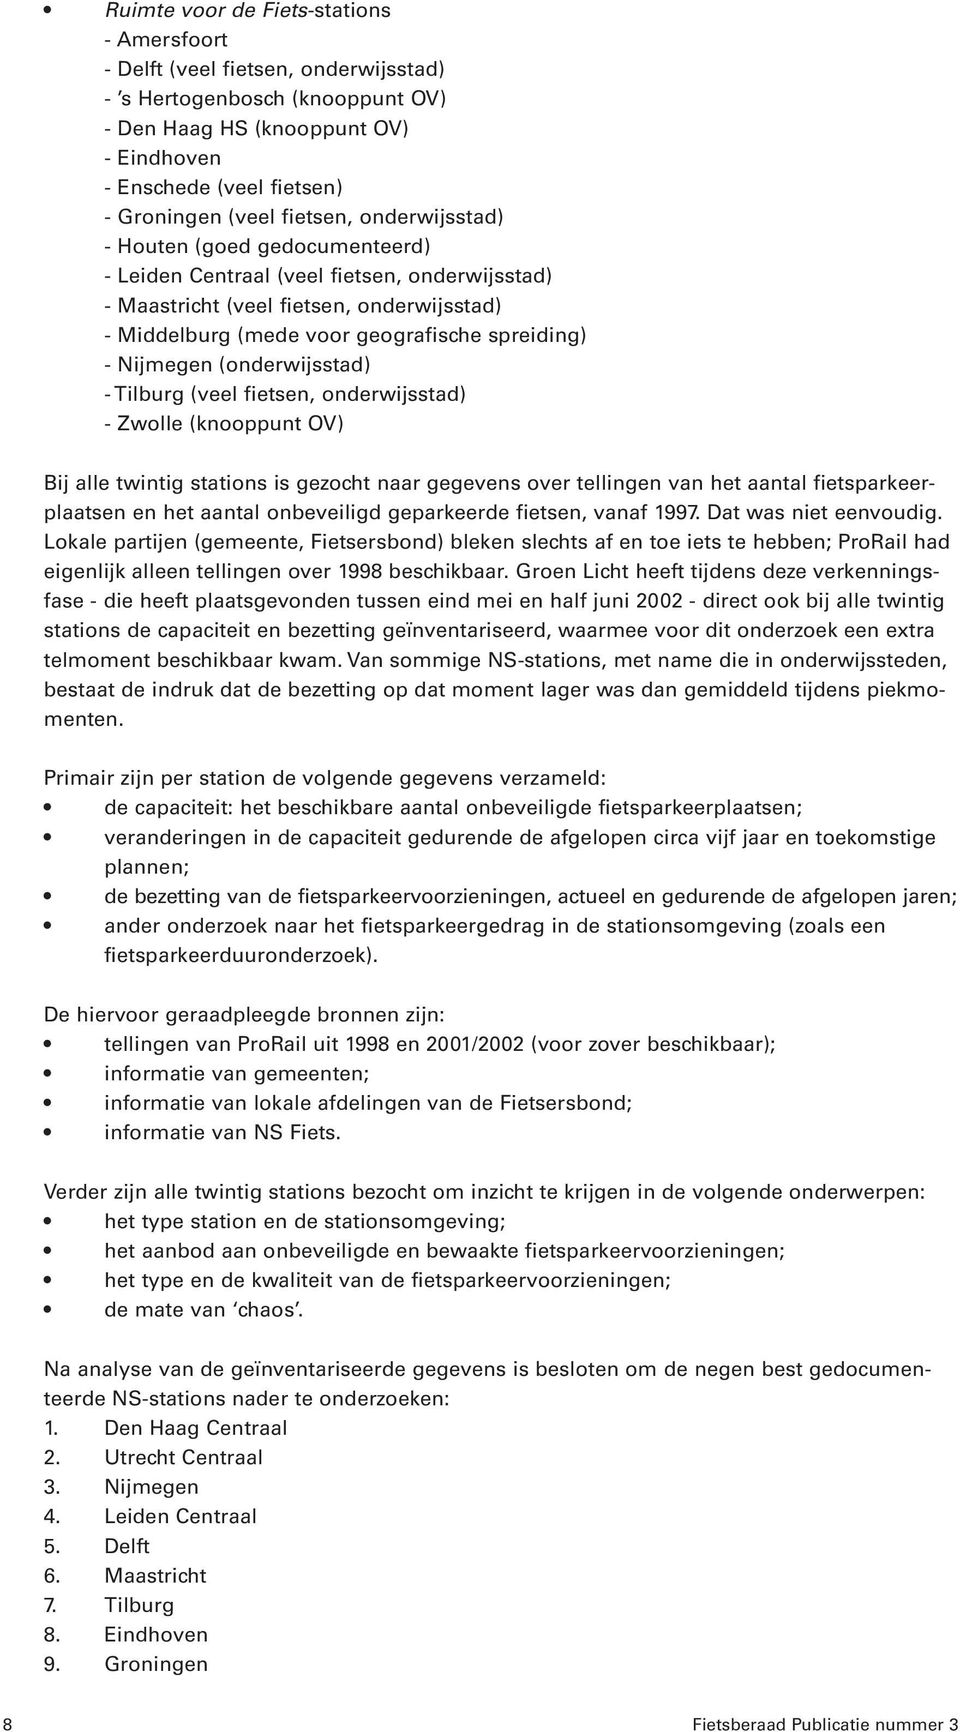 Nijmegen (onderwijsstad) - Tilburg (veel fietsen, onderwijsstad) - Zwolle (knooppunt OV) Bij alle twintig stations is gezocht naar gegevens over tellingen van het aantal fietsparkeerplaatsen en het